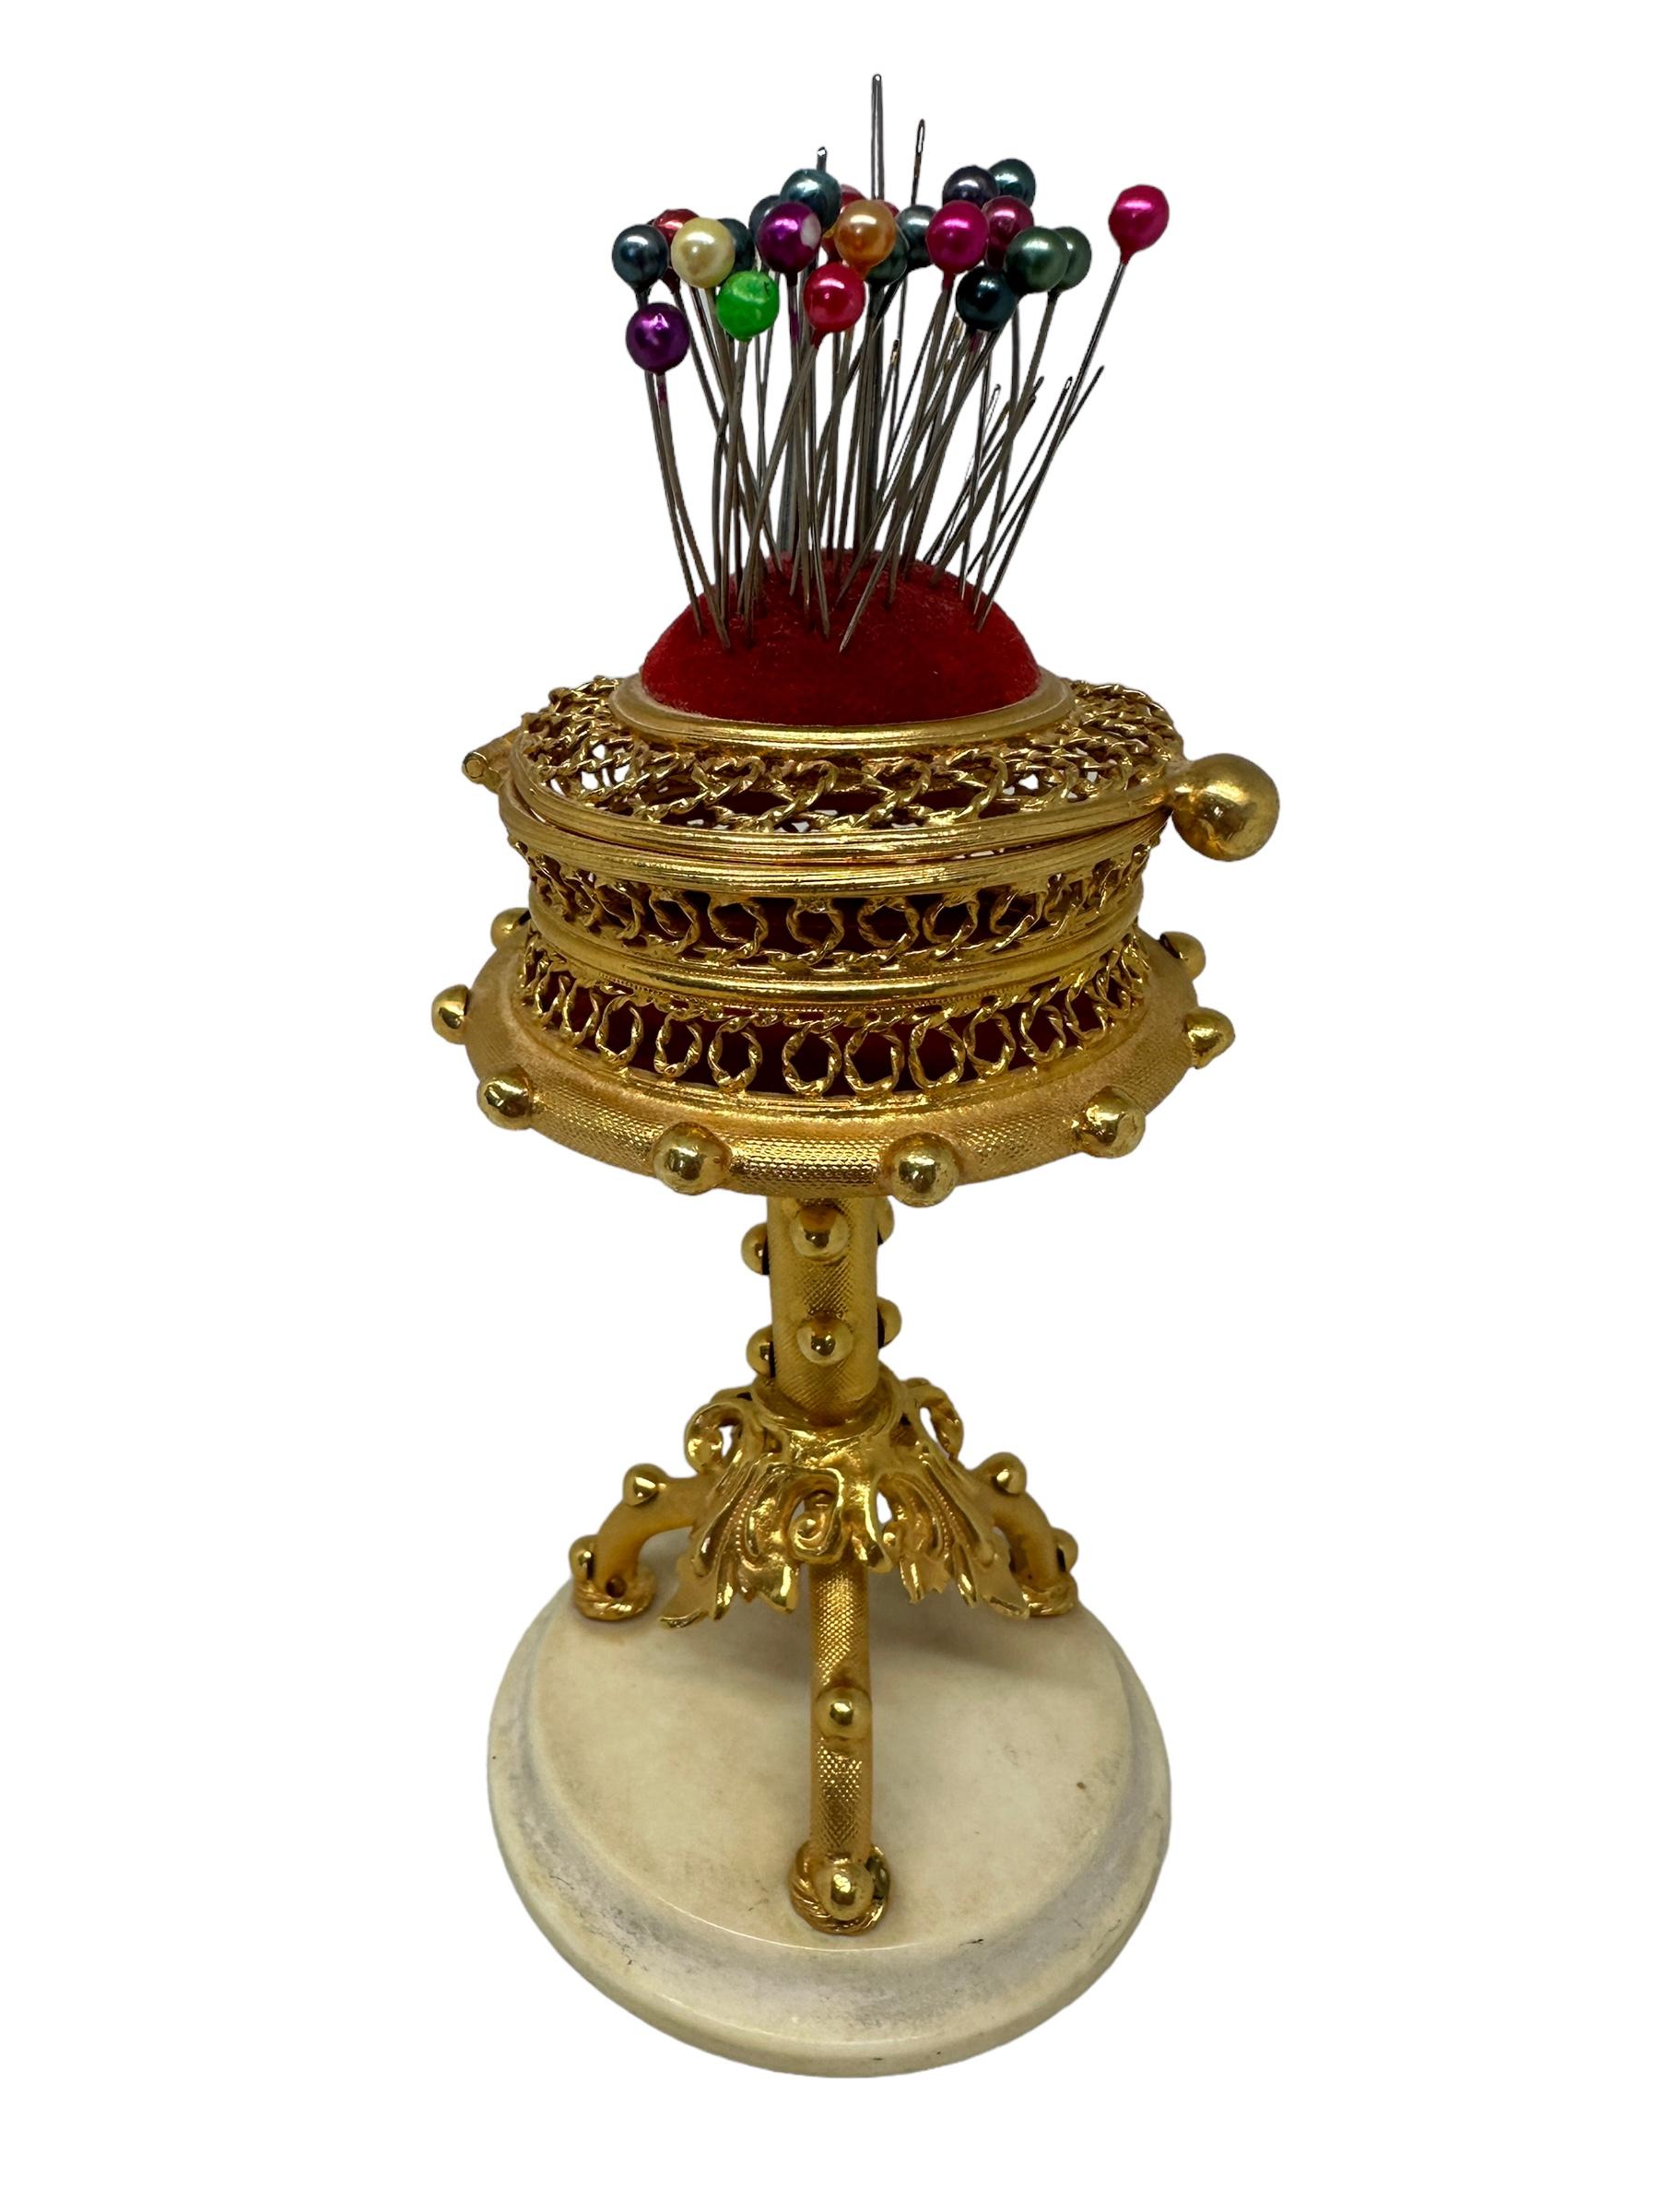 Diese Auflistung ist für eine schöne österreichische vergoldetes Metall Nadelbox auf einem Alabaster Basis mit einem Nadelkissen auf der Oberseite, circa 1890er Jahren. Ein wunderschönes Sammlerstück, das jeden Raum oder jede Sammlung bereichern